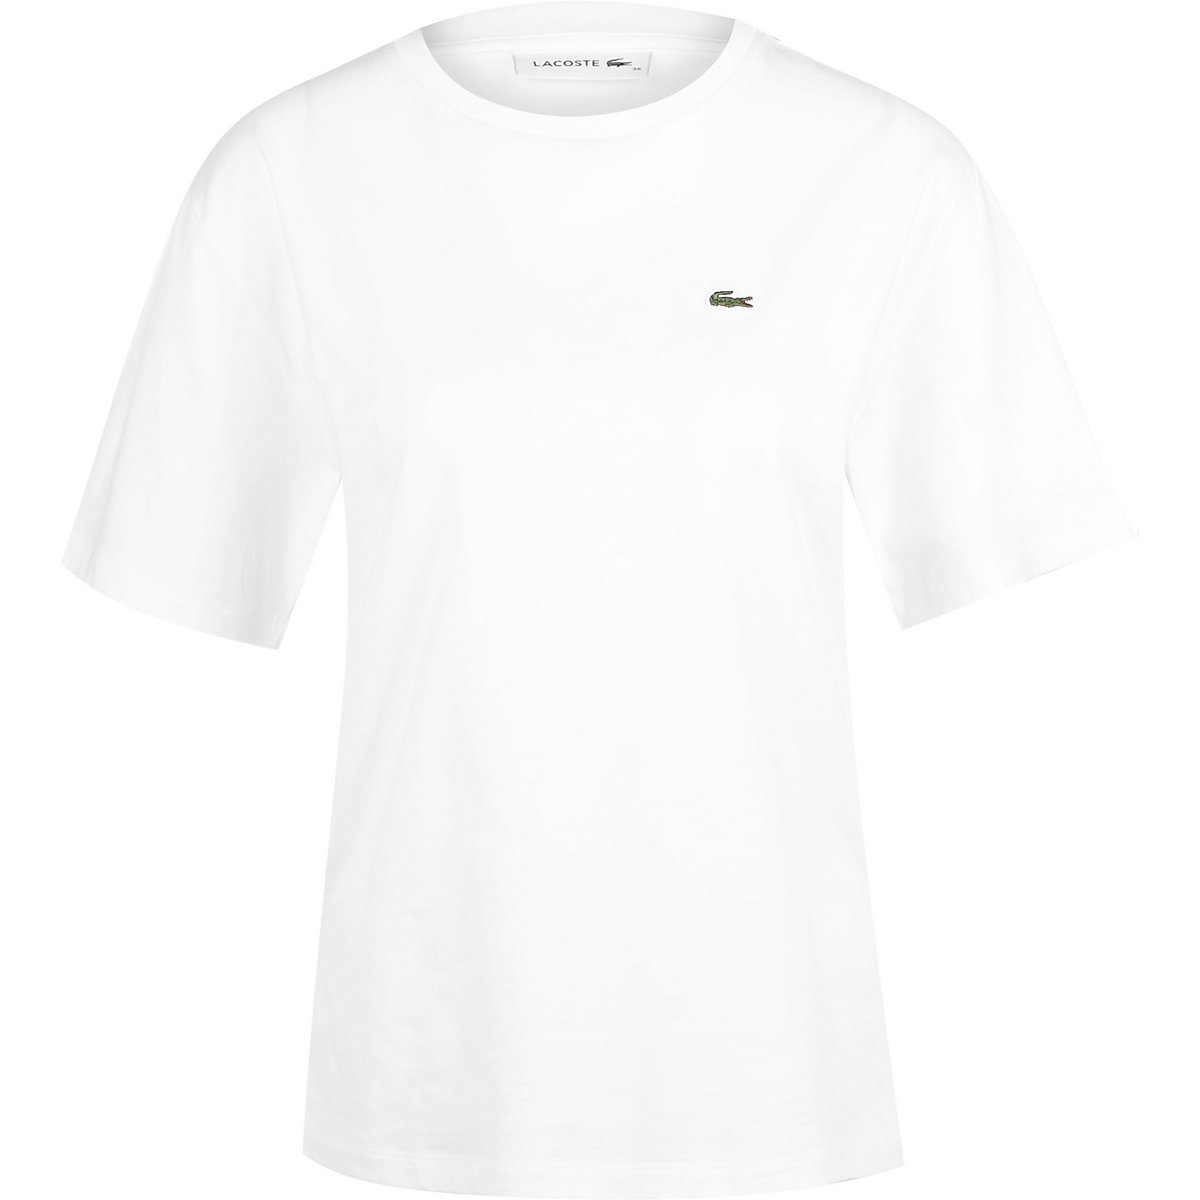 LACOSTE Lacoste T-Shirt Sportswear T-Shirts weiß